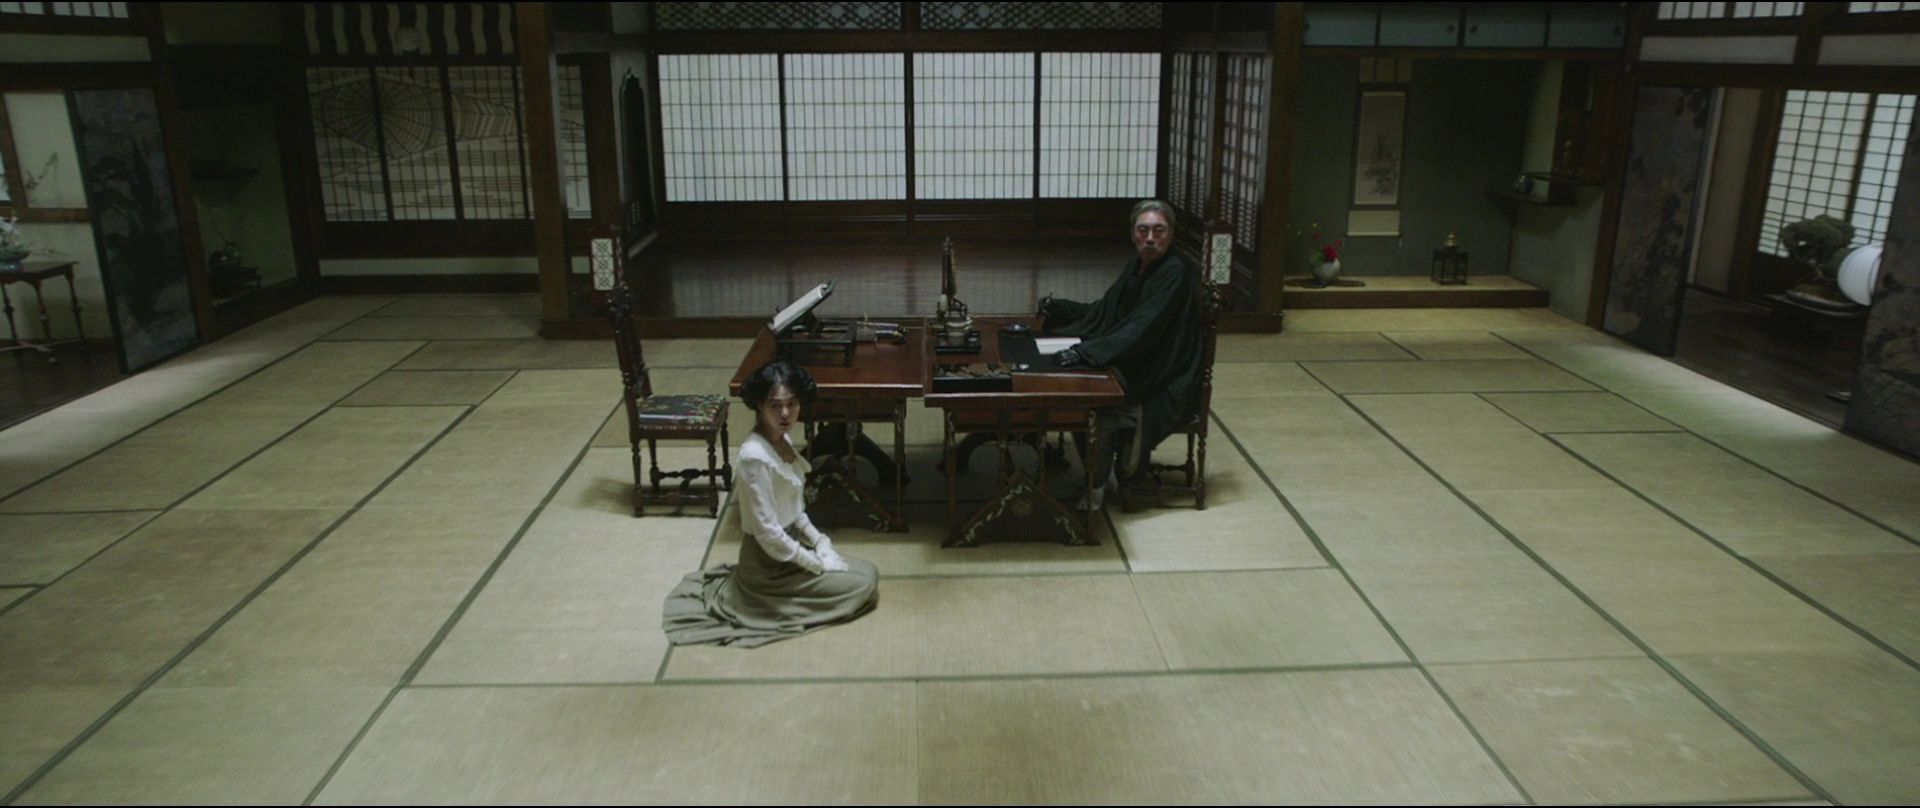 Cena do filme A Criada. Na imagem da esquerda para a direita, Hideko, uma mulher asiática de cabelos escuros está sentada ao pé do seu tio Kouzuki. Ele é um homem asiático de cabelos grisalhos. Ela veste branco e ele veste preto. O cenário é uma biblioteca.